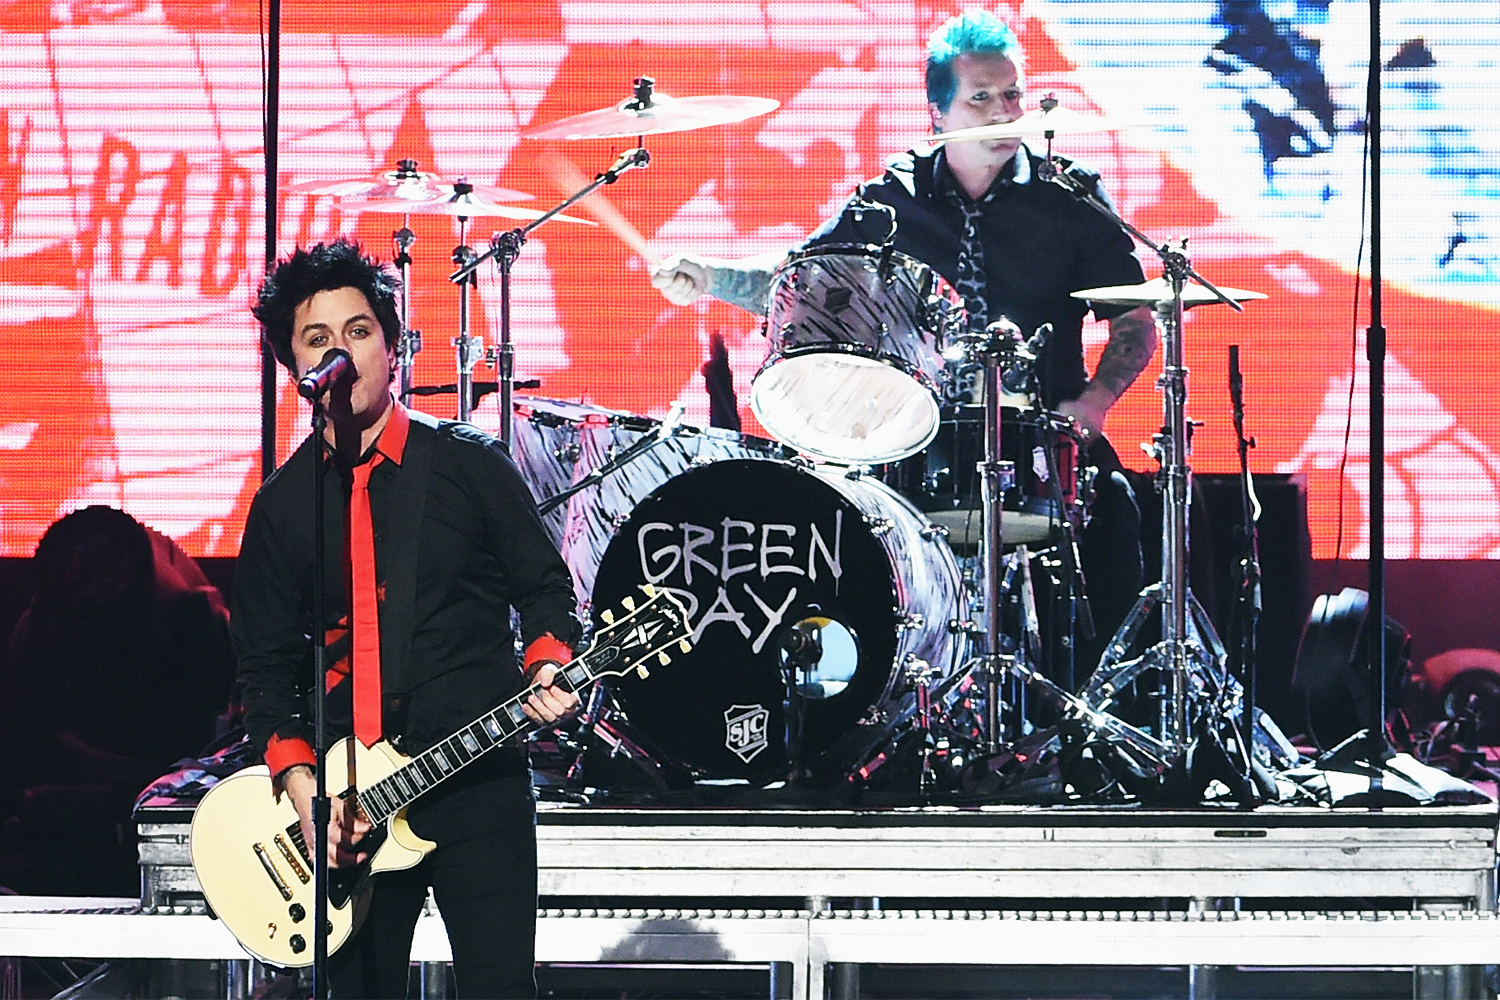 A banda Green Day realiza apresentação durante a premiaçã do American Music Awards, realizada no Microsoft Theater, em Los Angeles, no estado americano da Califórnia - 20/11/2016